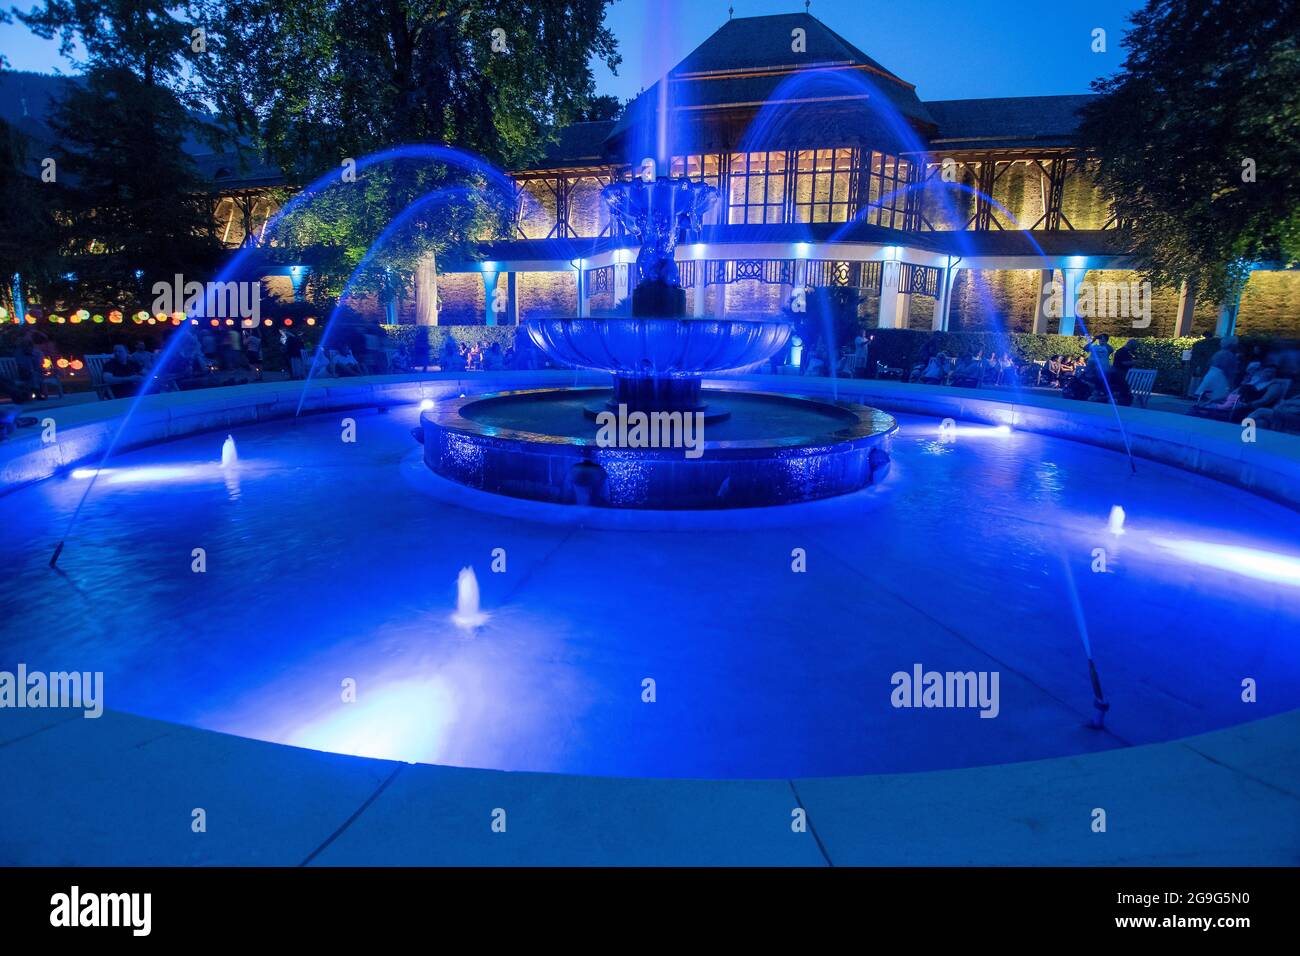 Spa giardino illuminazione nel giardino termale reale Bad Reichenhall. La fontana illuminata Solebrunnen di fronte alla casa di laurea. Bad Reichenhall, Baviera, Germania. Foto Stock